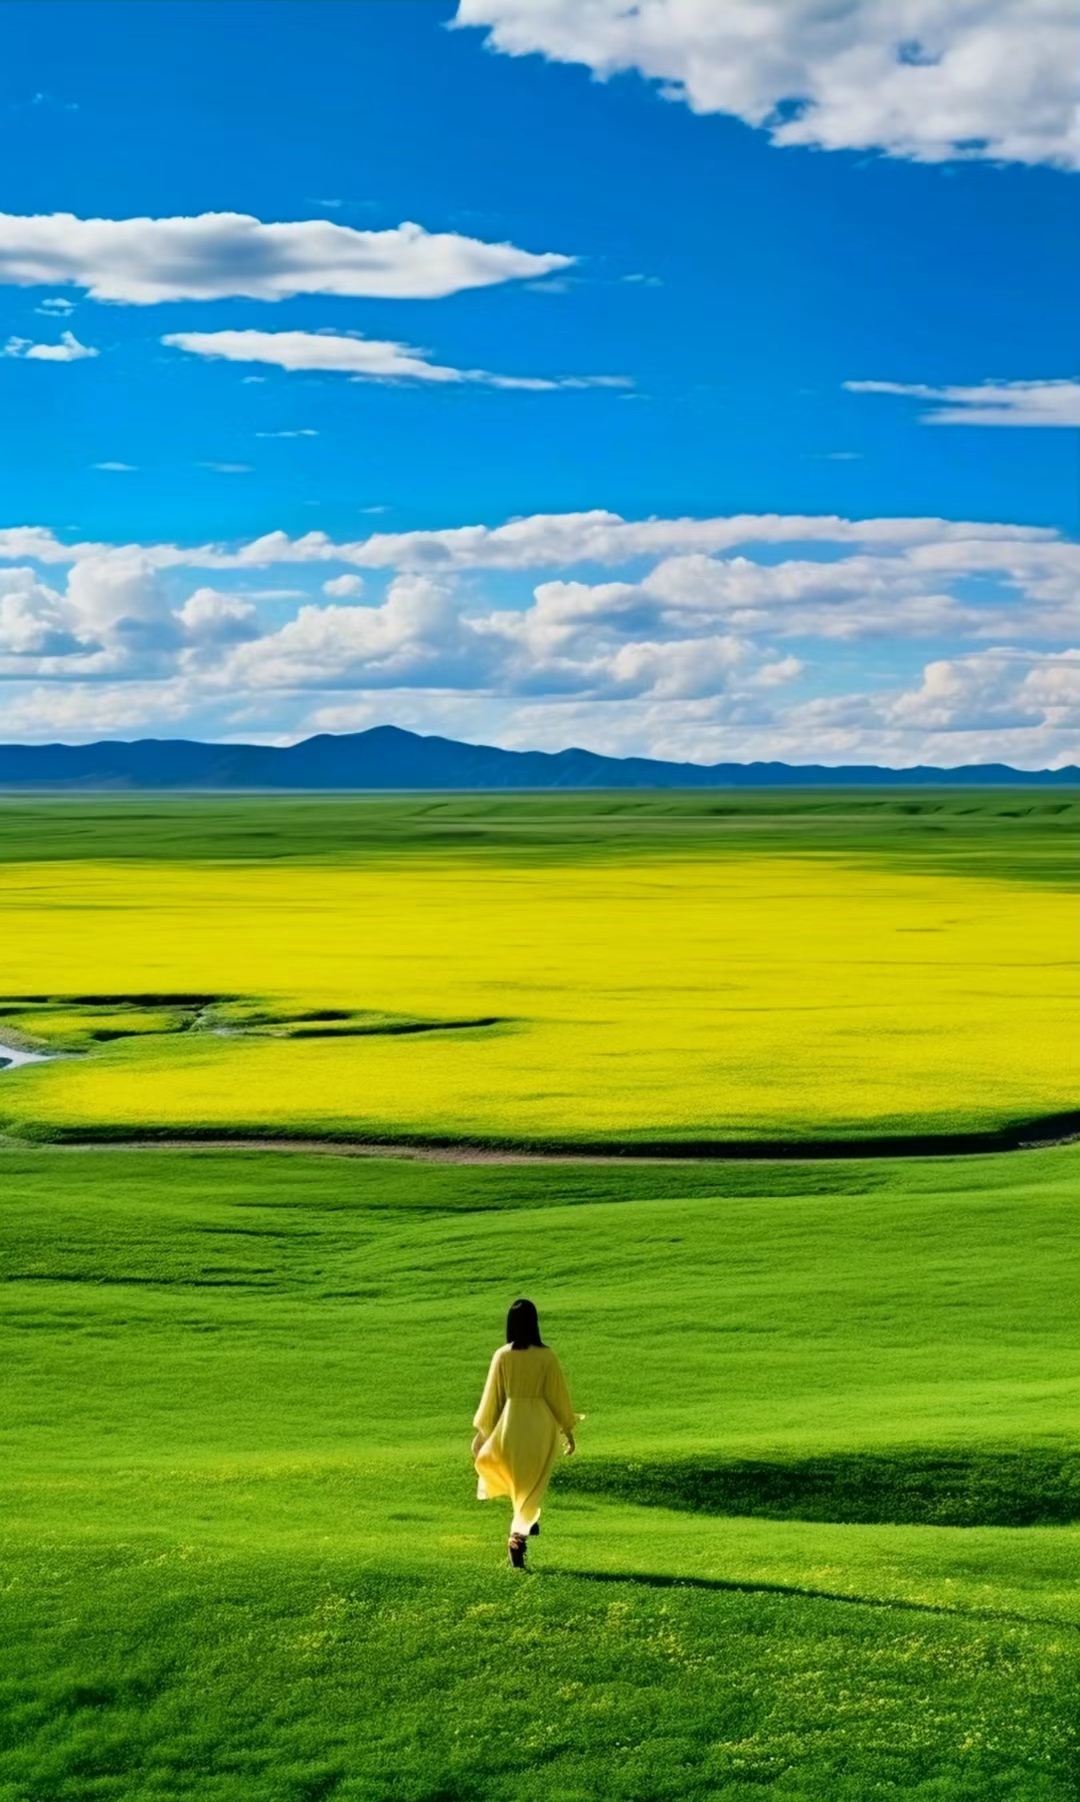 川西大草原若尔盖,有着绵延的草原高山,这里的美丽风光令人陶醉